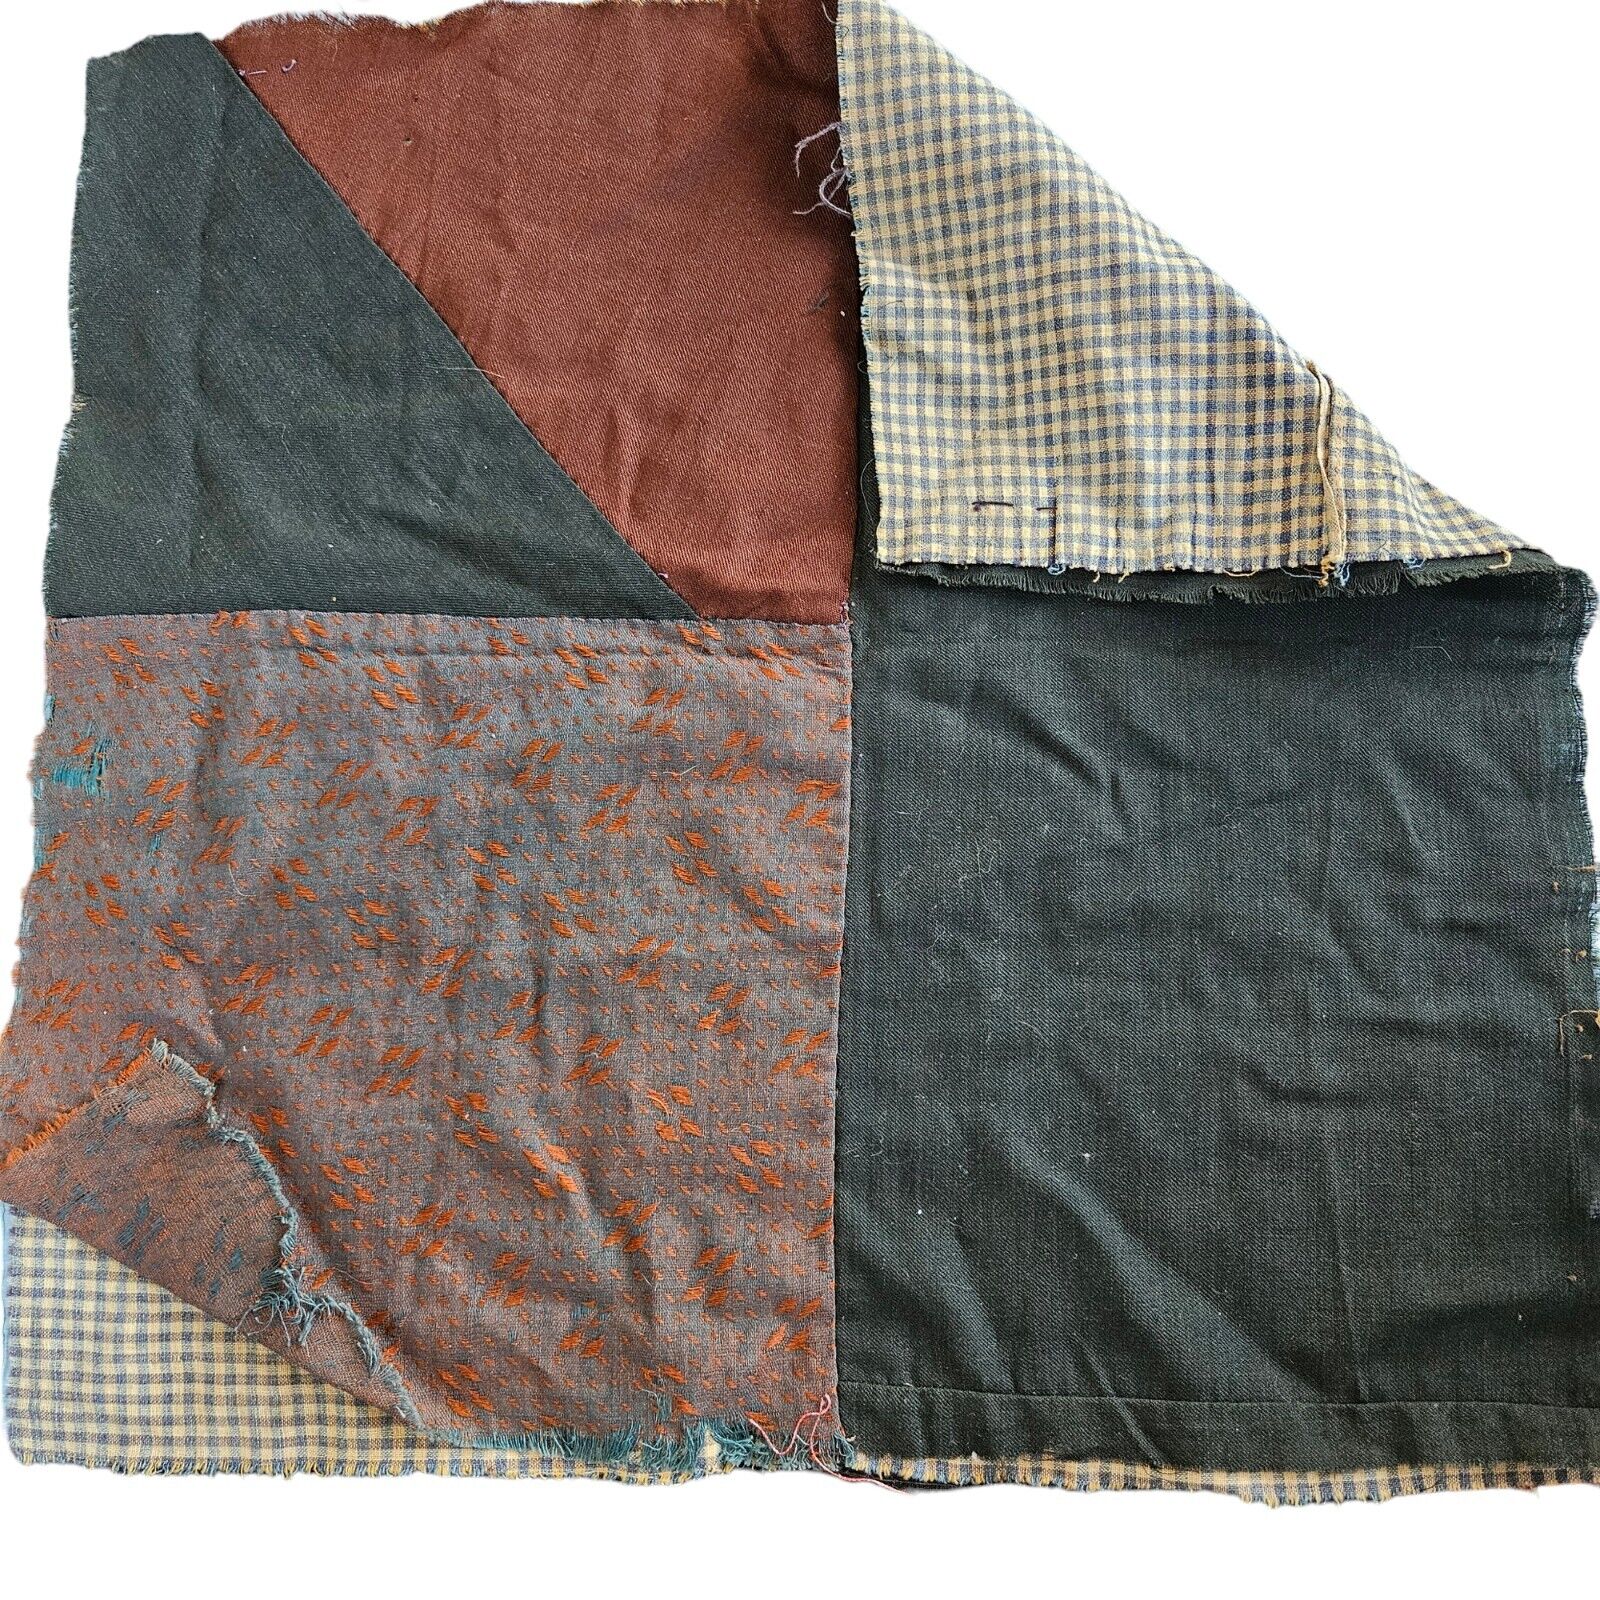 Antique Crazy Quilt Piece Block Hand Pieced Patchwork Early Fabrics Folk Art A